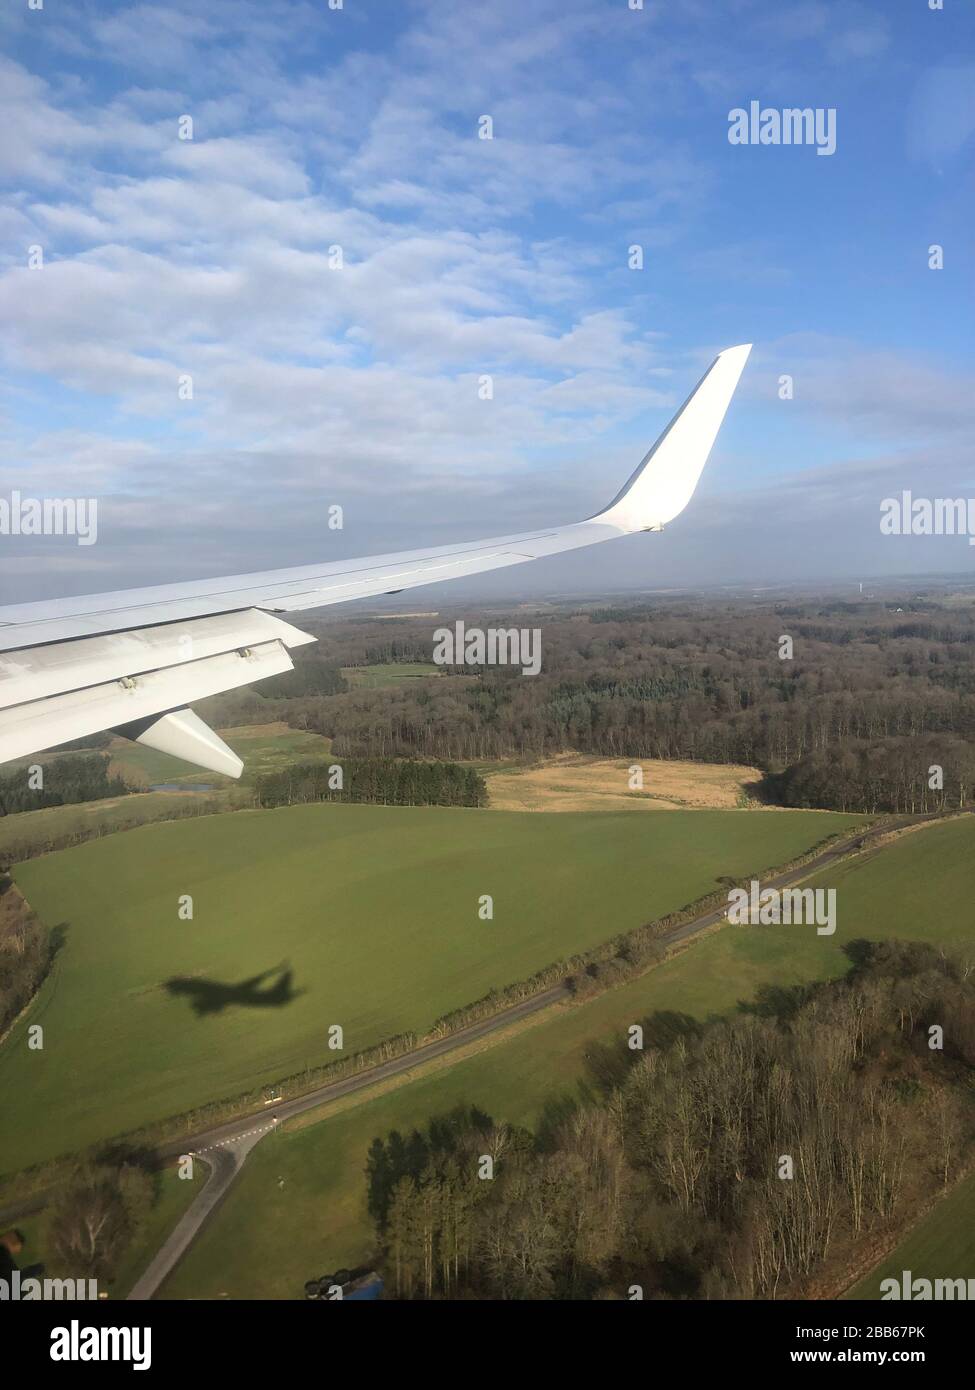 Aile d'avion et ombre d'un avion survolant le paysage rural près de Billund, Jutland, Danemark Banque D'Images